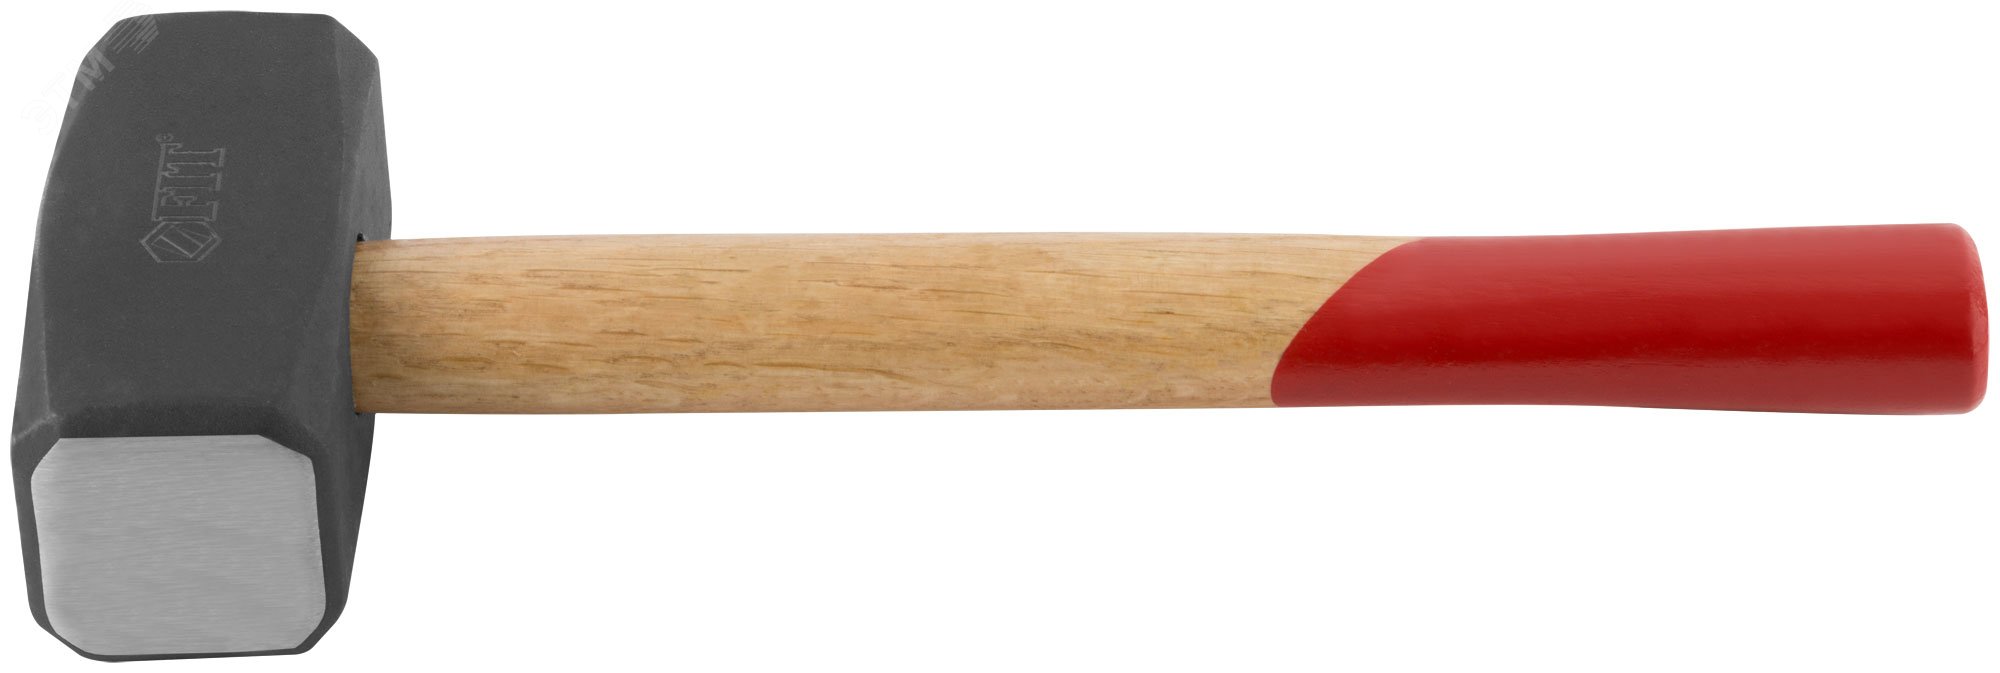 Кувалда кованая, деревянная ручка Профи 2.0 кг 45120 FIT - превью 5